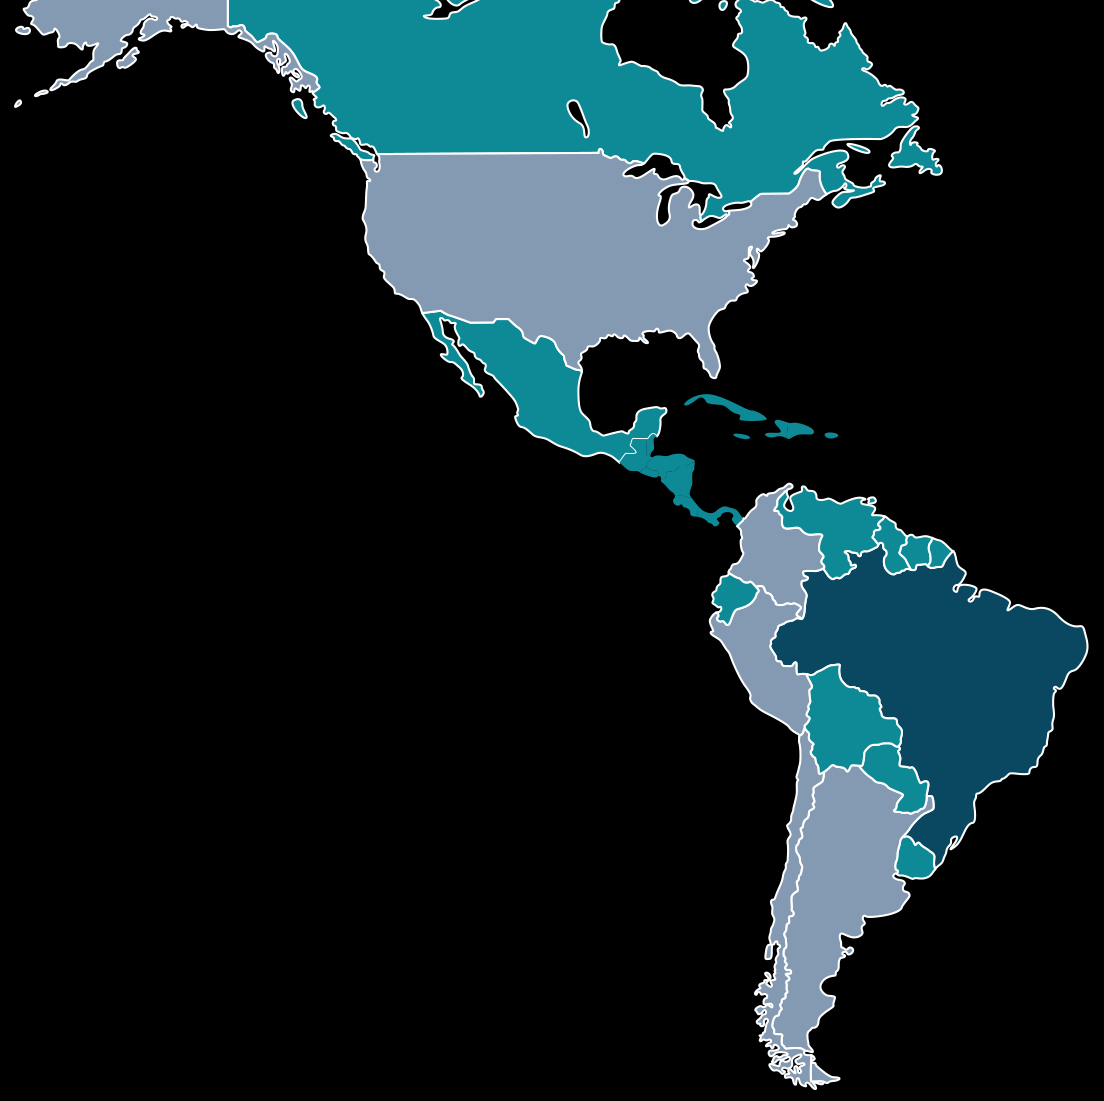 GRUPO CONTAX Operação em 4 países: Brasil, Colômbia, Argentina e Peru Atendemos o Chile, Panama, EUA, Canada e Espanha via off-shore Principais serviços: Atendimento e Social Care, Cobrança,